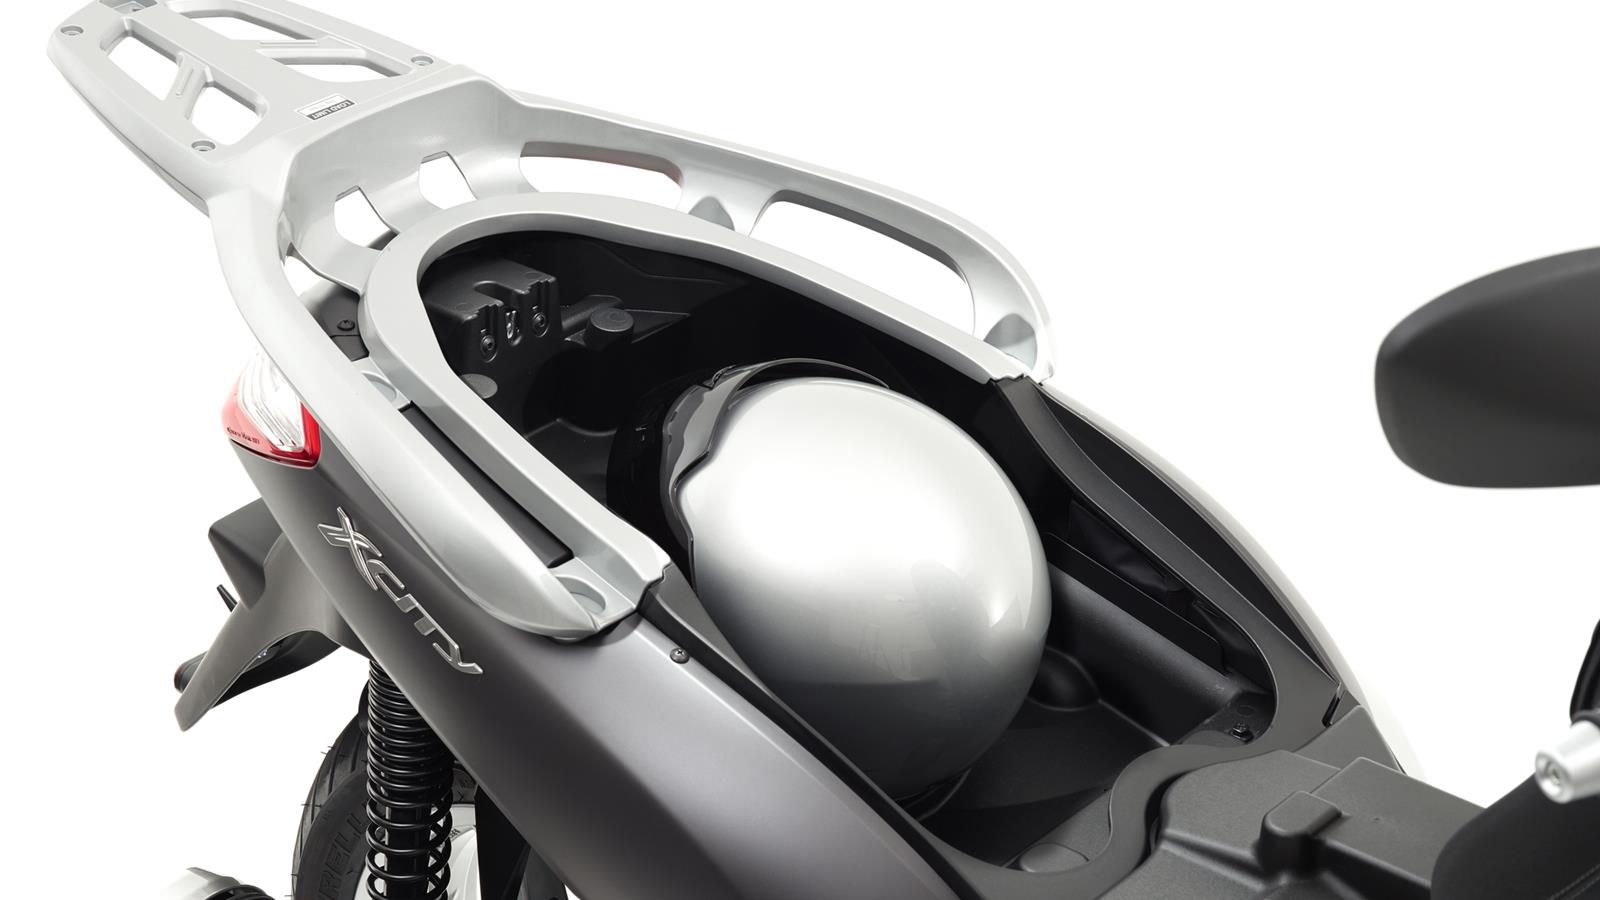 Úsporný a dynamický motor o objemu 250 ccm Model X-City 250 přesně a ve správný okamžik reaguje na každou změnu polohy škrticí klapky.